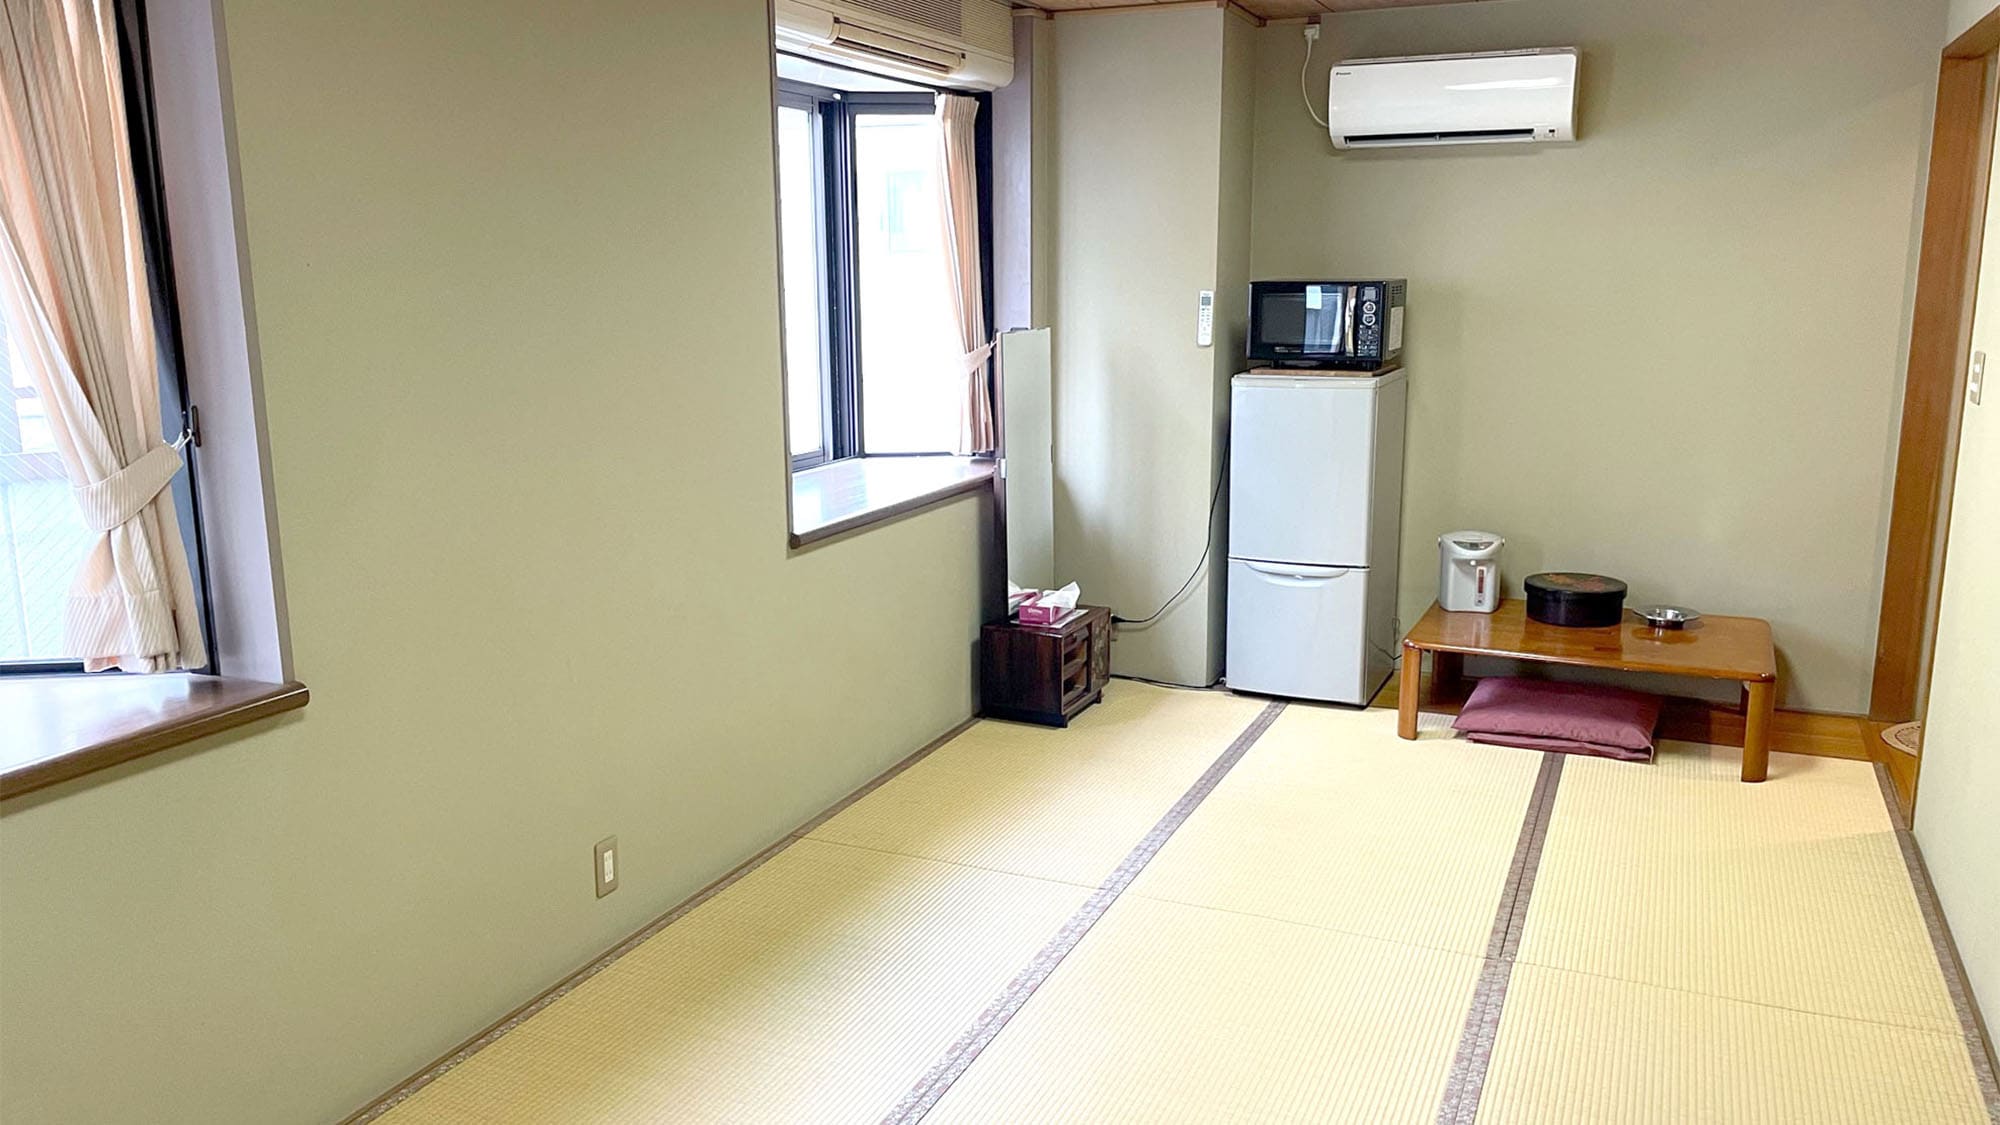 ・ [ตัวอย่างห้องพัก] ห้องสไตล์ญี่ปุ่น 9 เสื่อทาทามิ